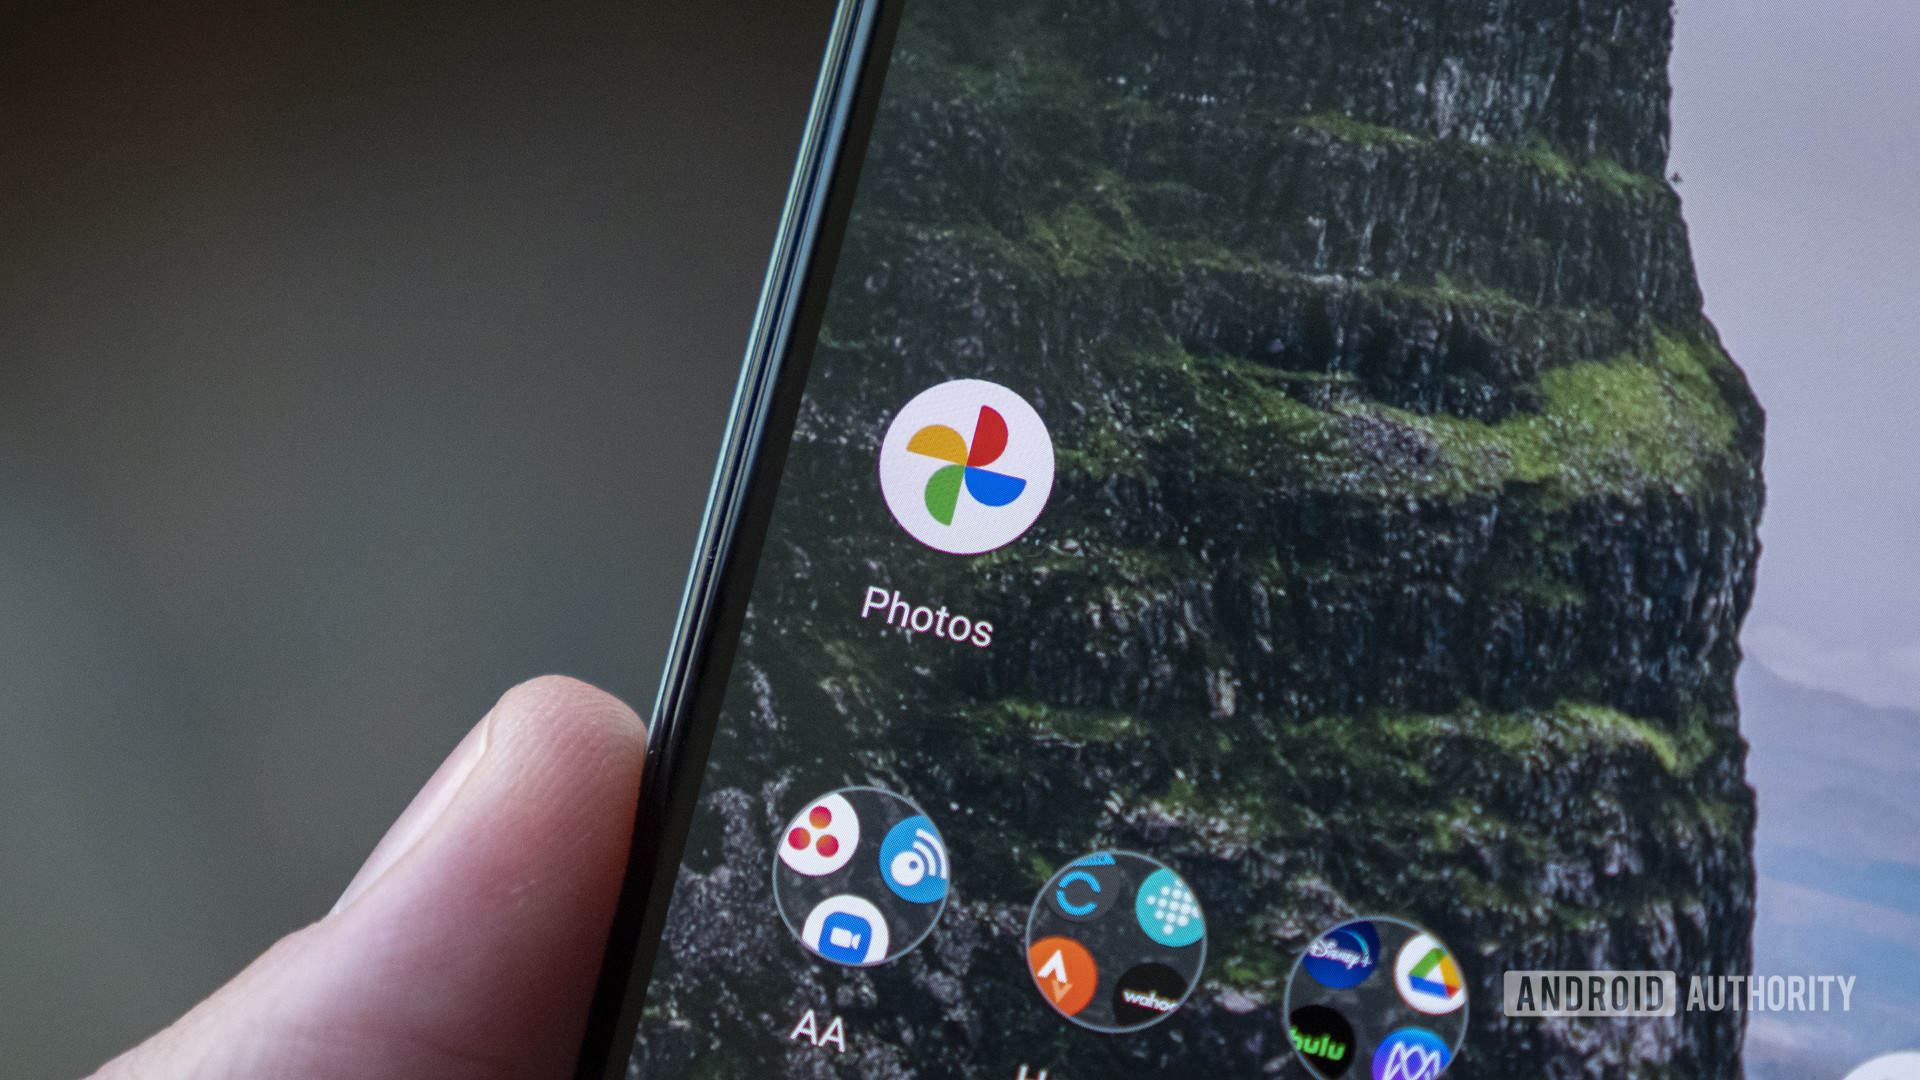 Сервис Google фото больше не будет иметь бесплатное неограниченное хранилище в июне 2021 года